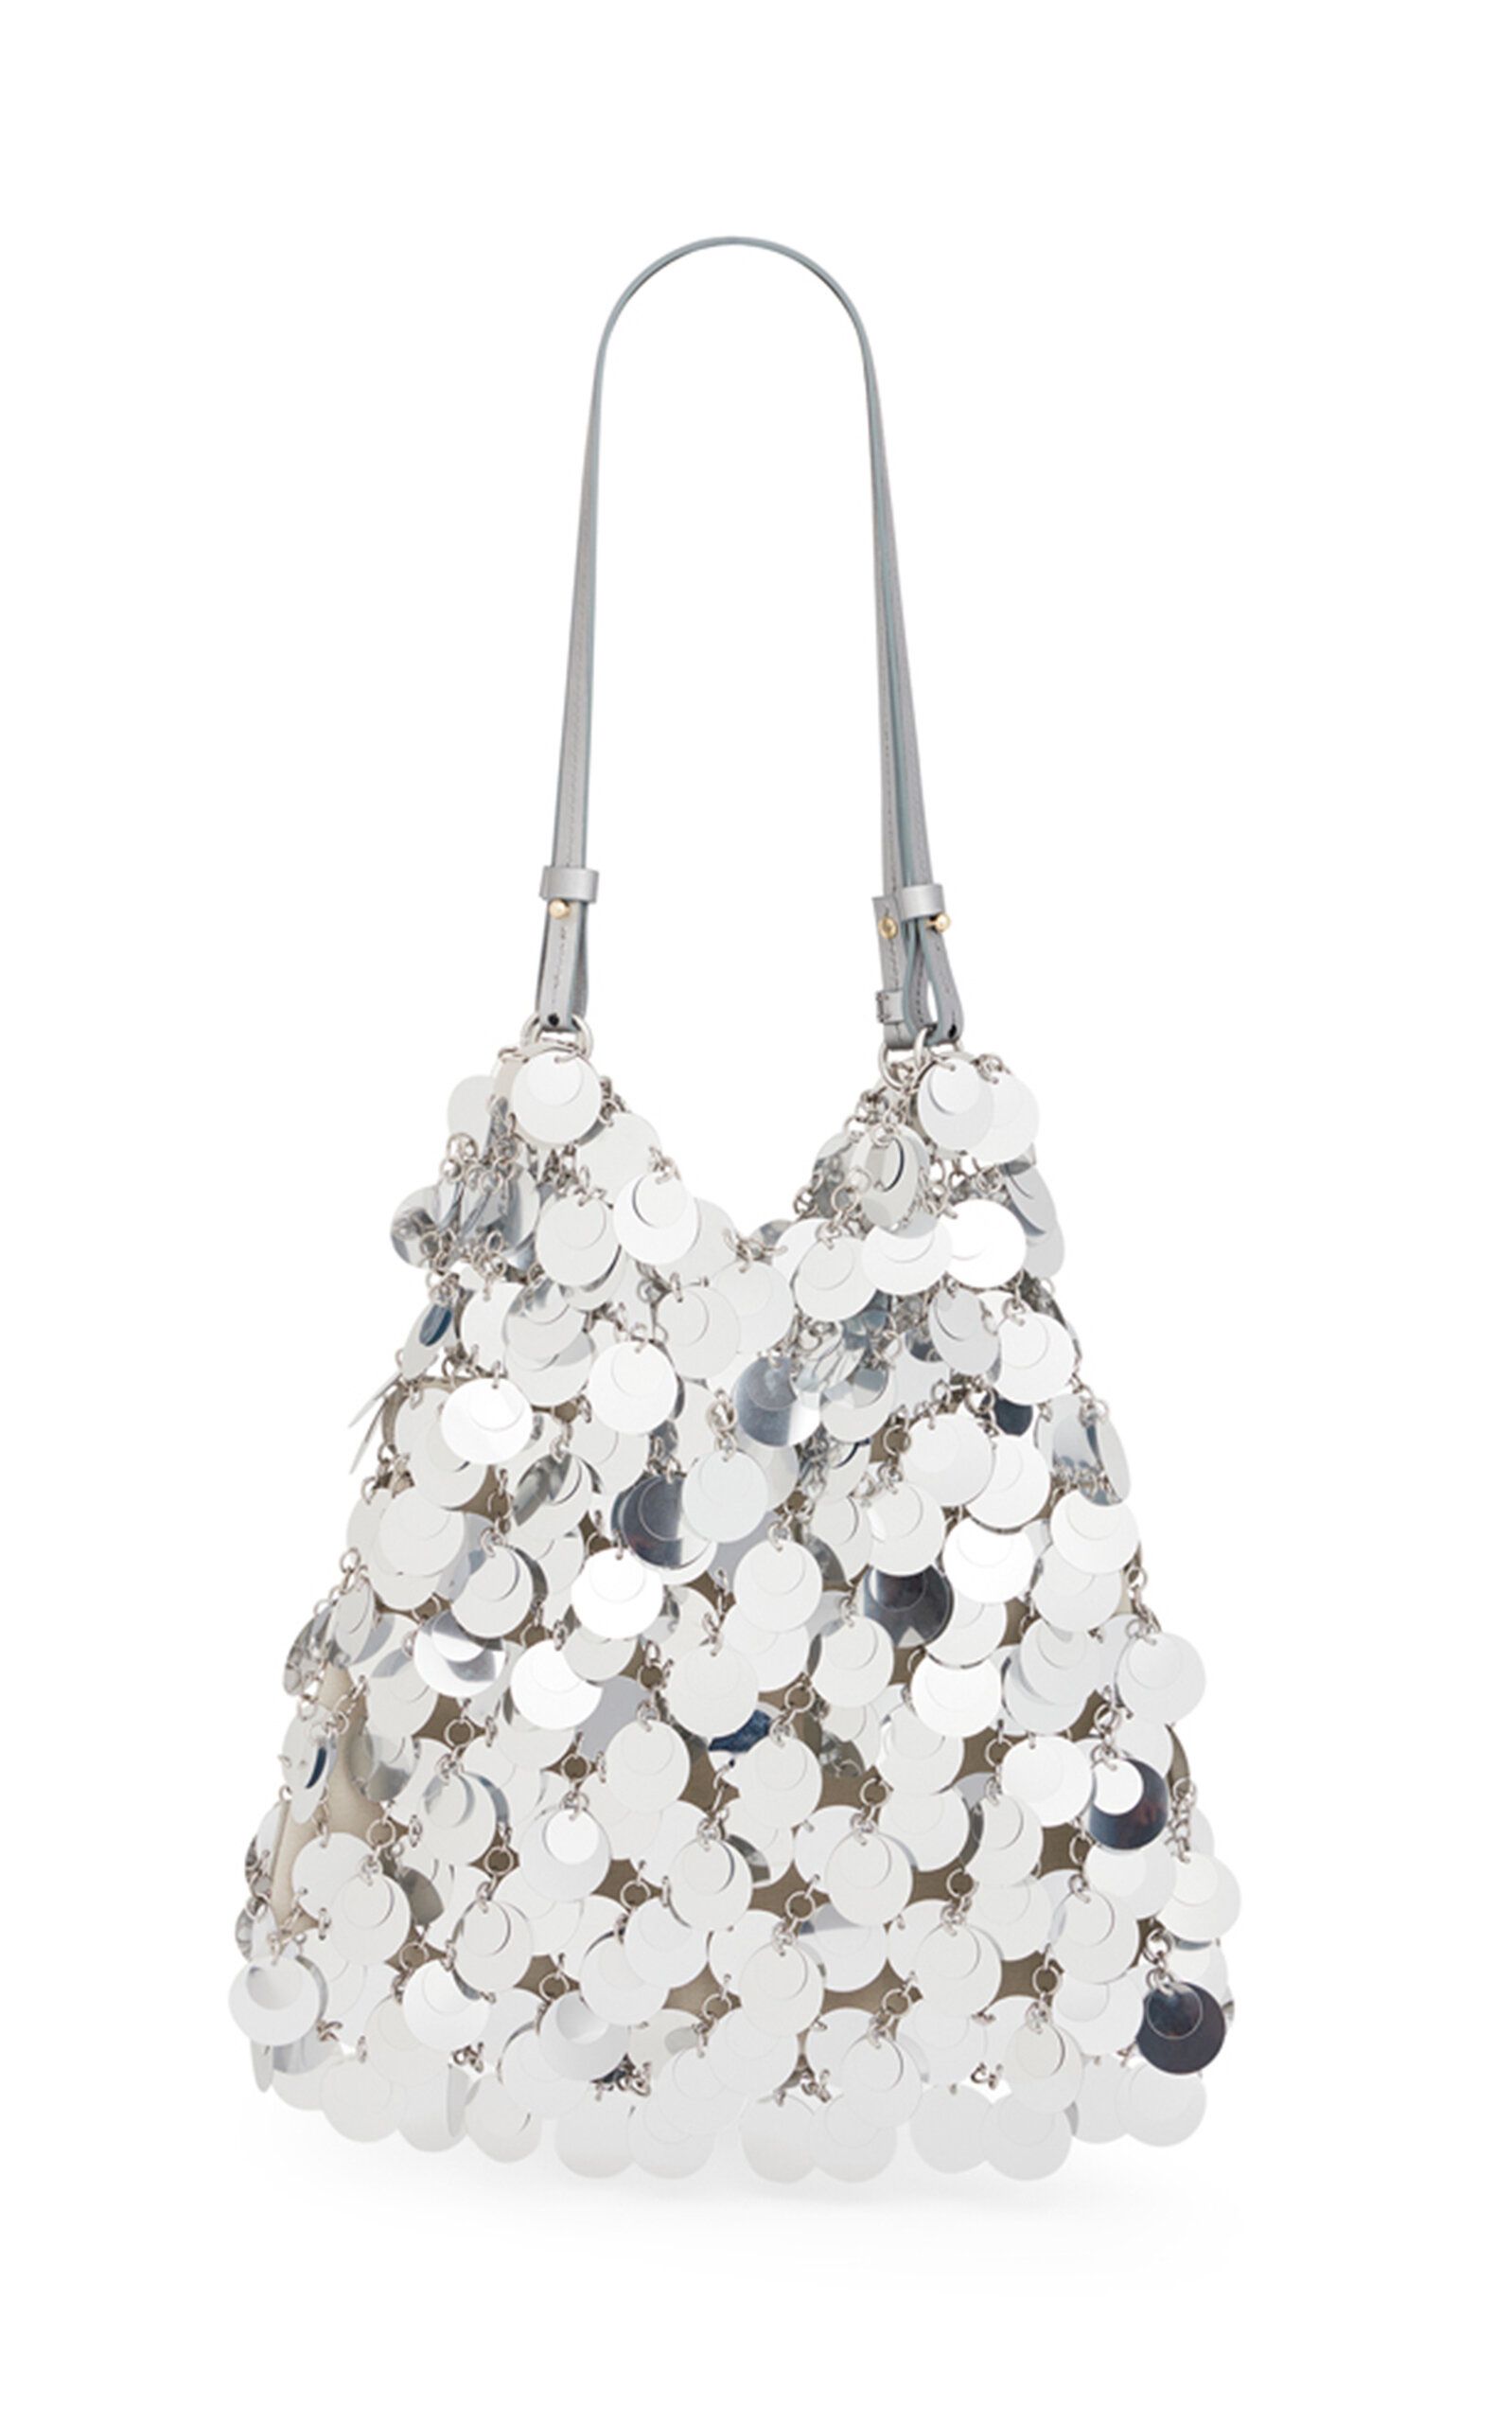 XL Sparkle Silver-Tone Paillette Hobo bag | Moda Operandi (Global)